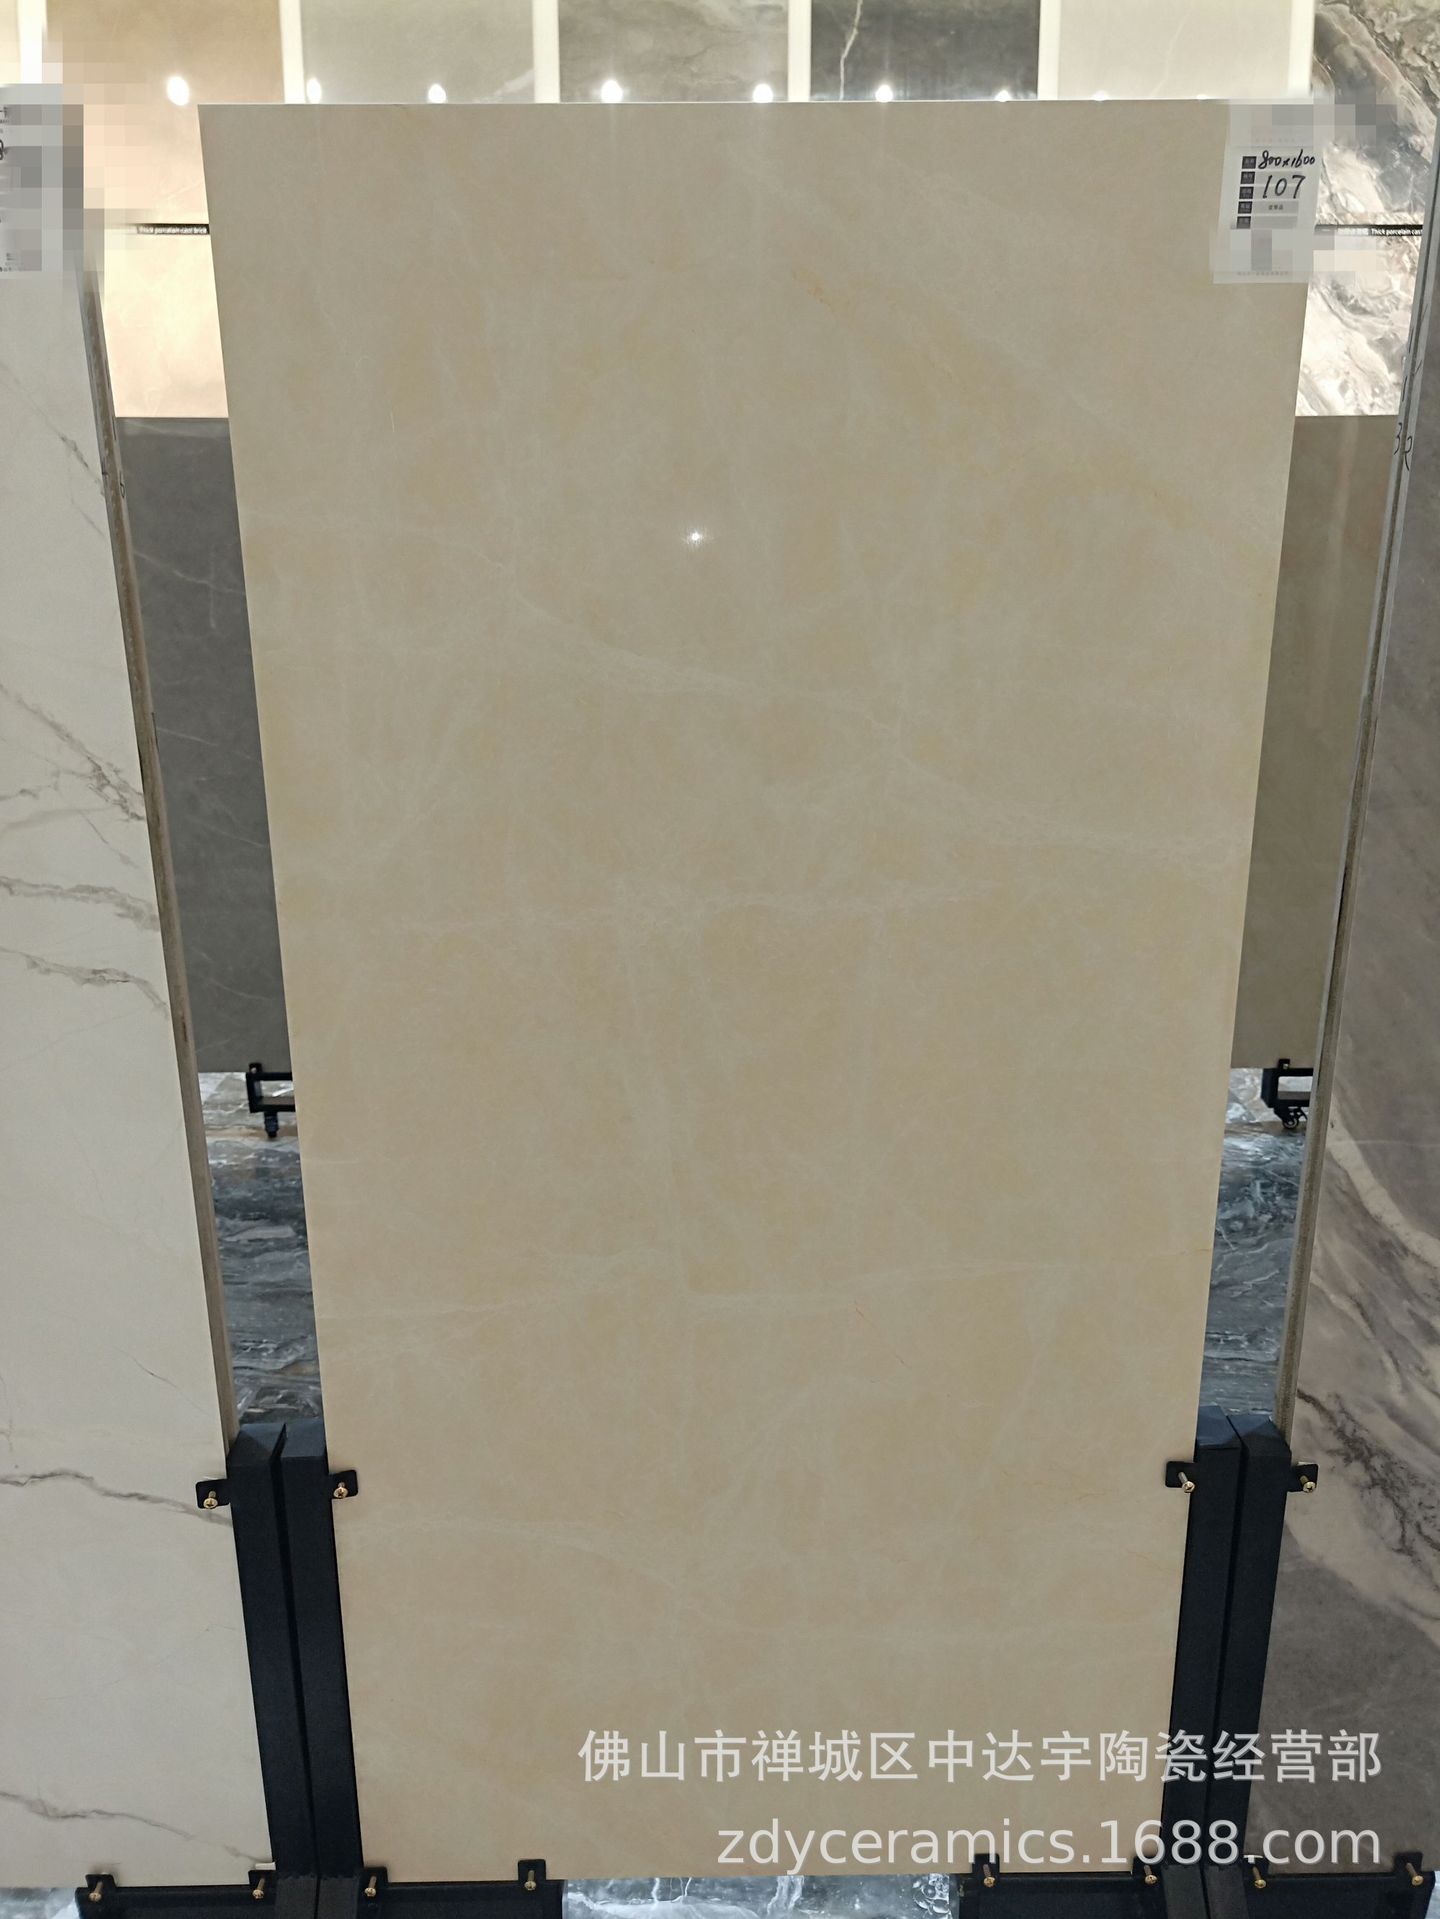 佛山负离子通体大理石800x1600工程酒店客厅卫生间地板砖墙面瓷砖示例图4